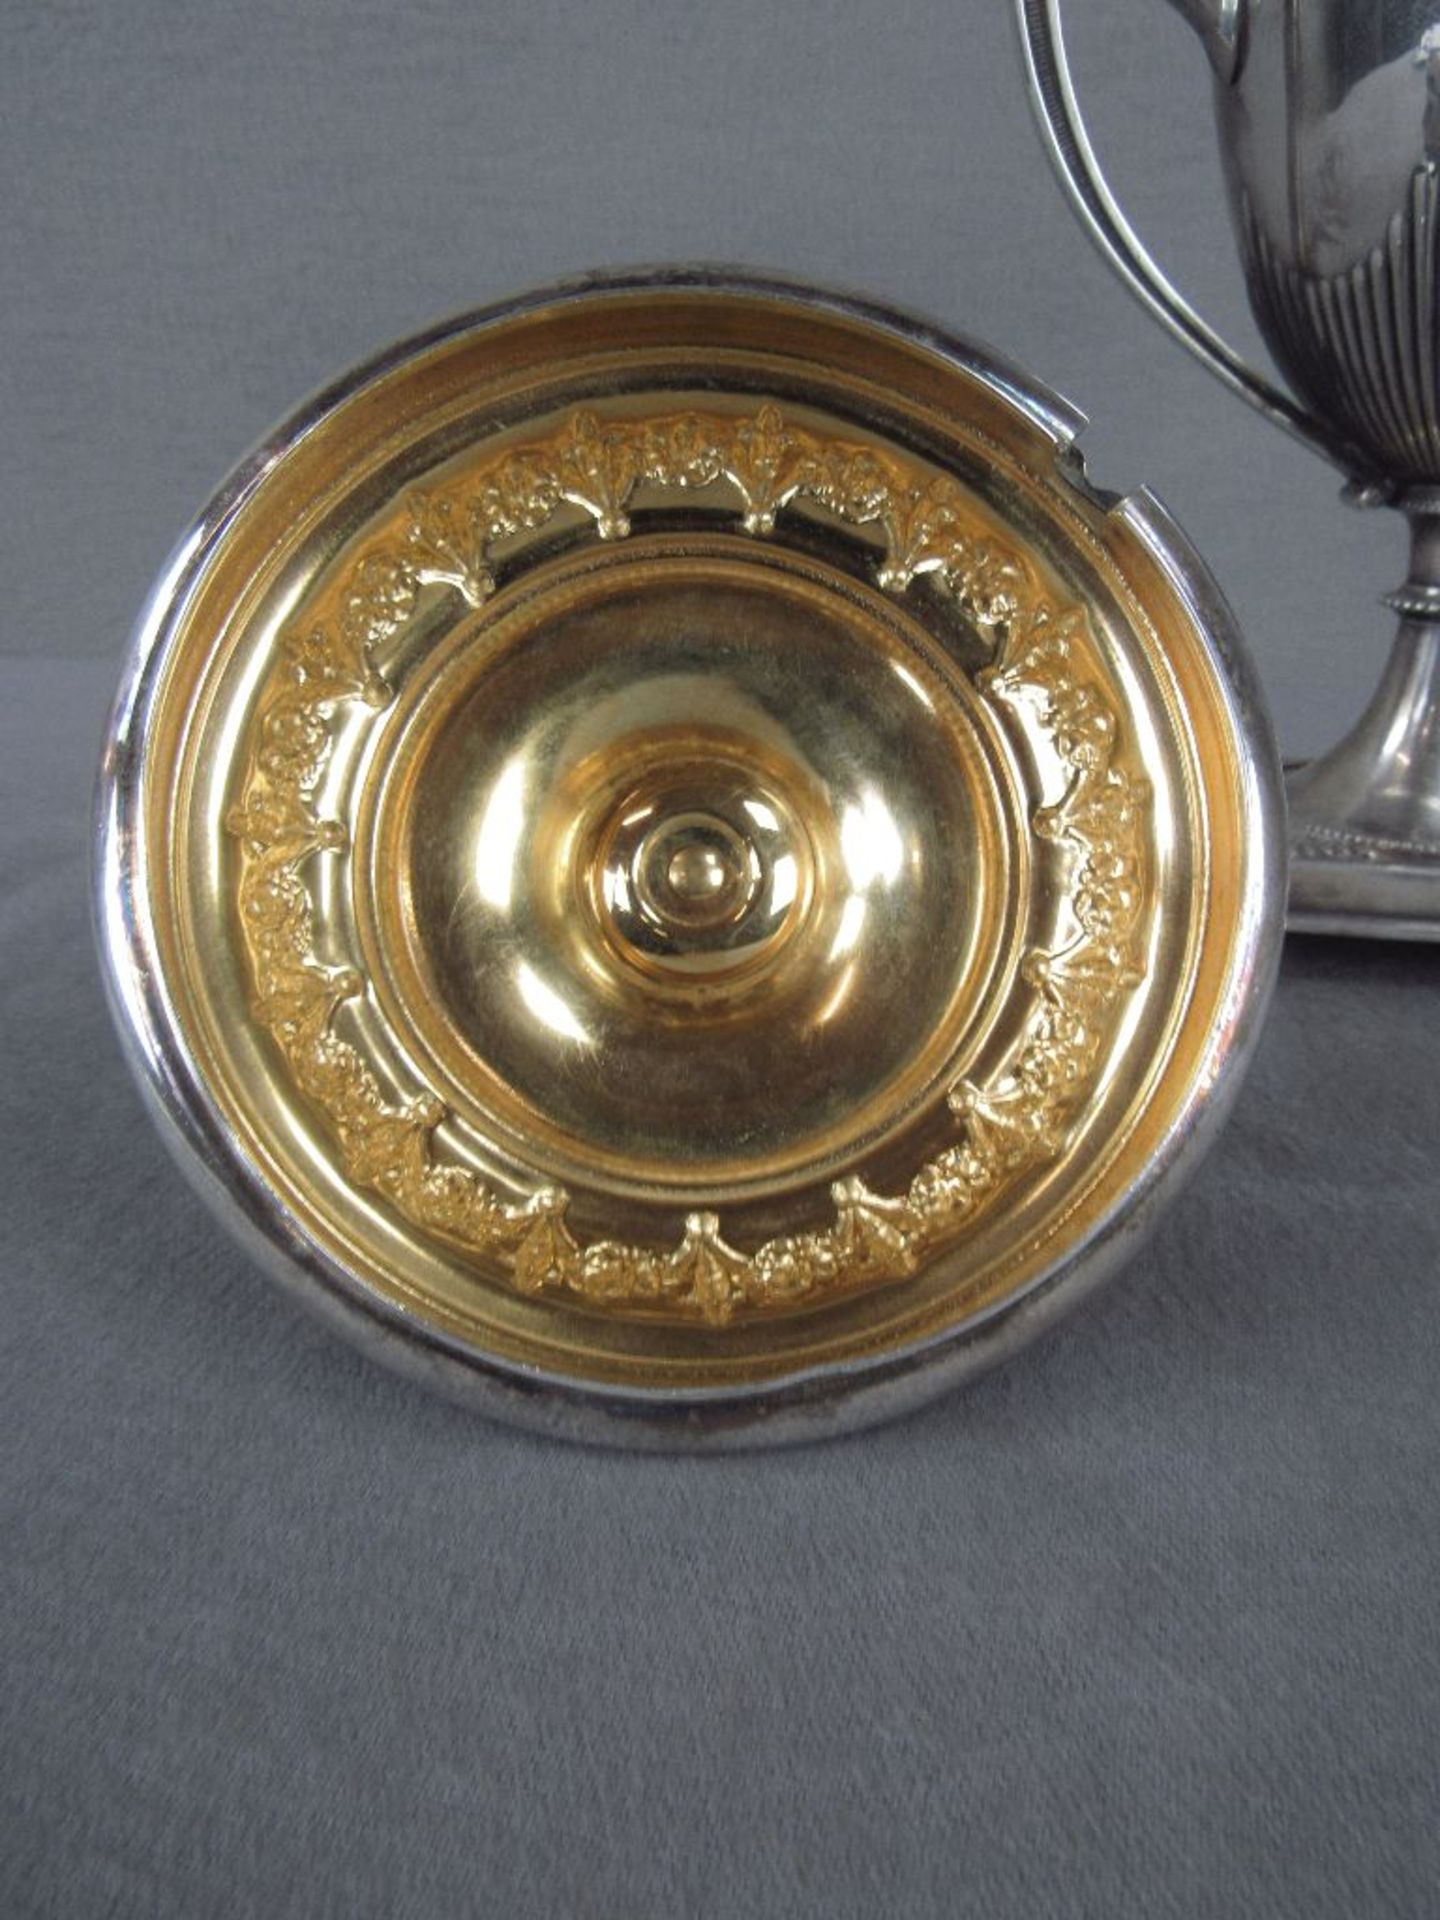 Amphorengefäß evtl Silber ungeprüft um 1910 zwei Handhaben vier Kugelfüße innen vergoldet sehr - Image 3 of 5